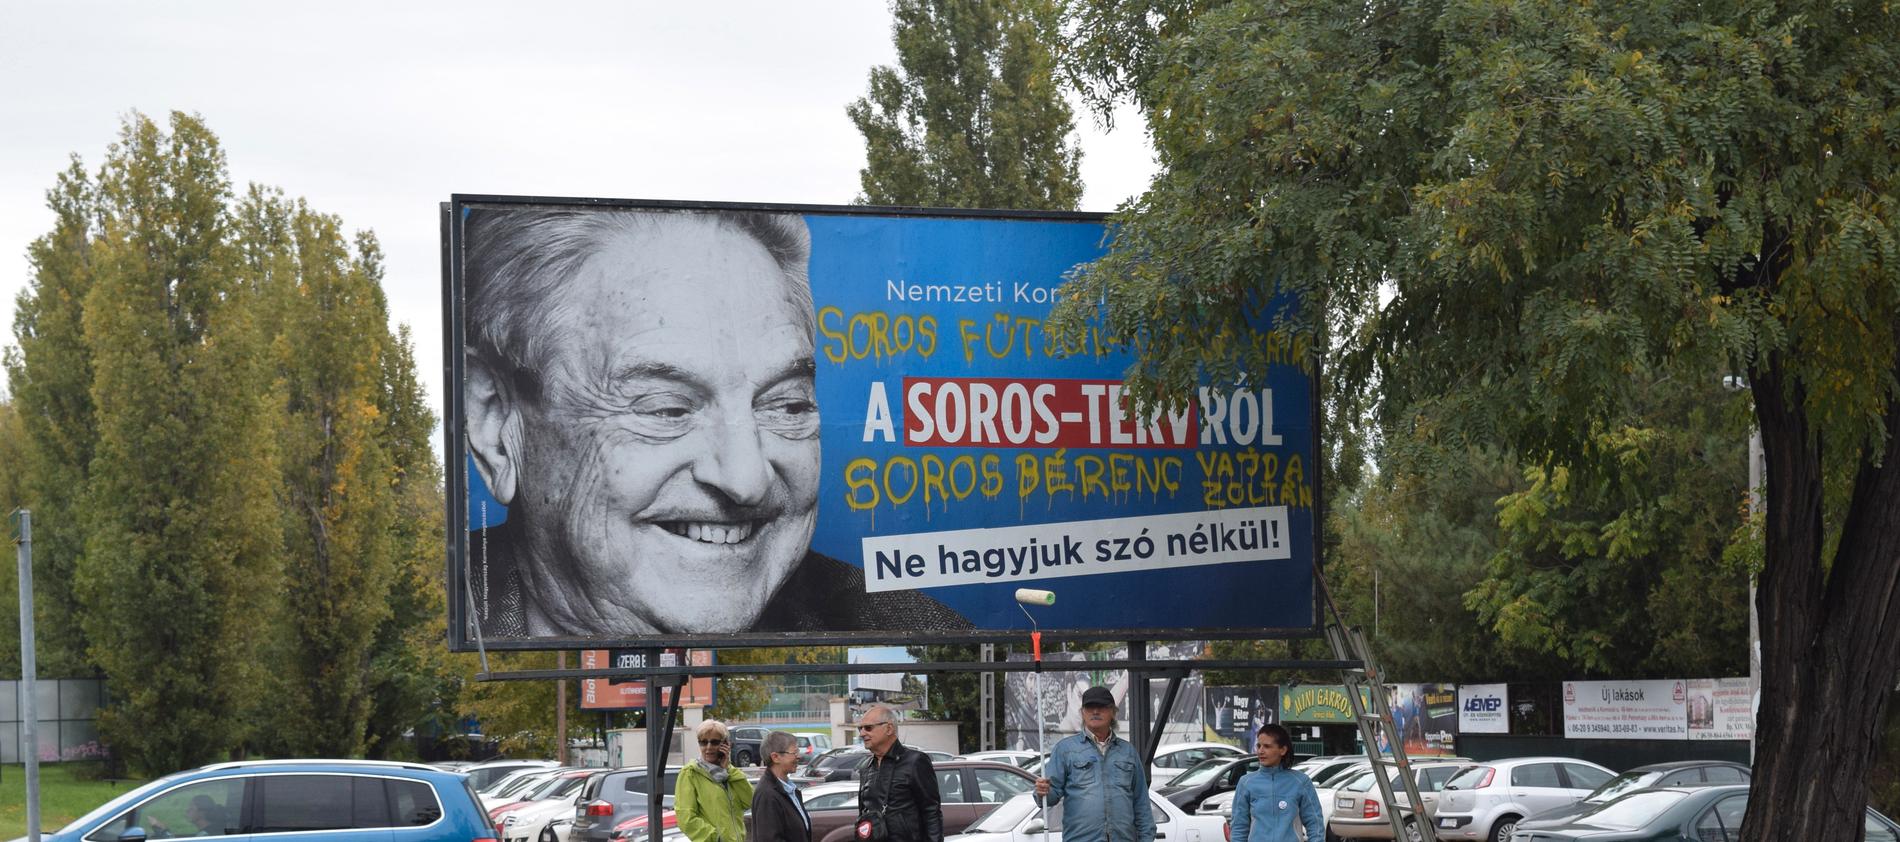 Ungerns regeringsparti Fidesz har återkommande affischkampanjer mot George Soros, en ungerskfödd finansman med judisk bakgrund. Kampanjerna har fått kritik för sin antisemitiska underton.